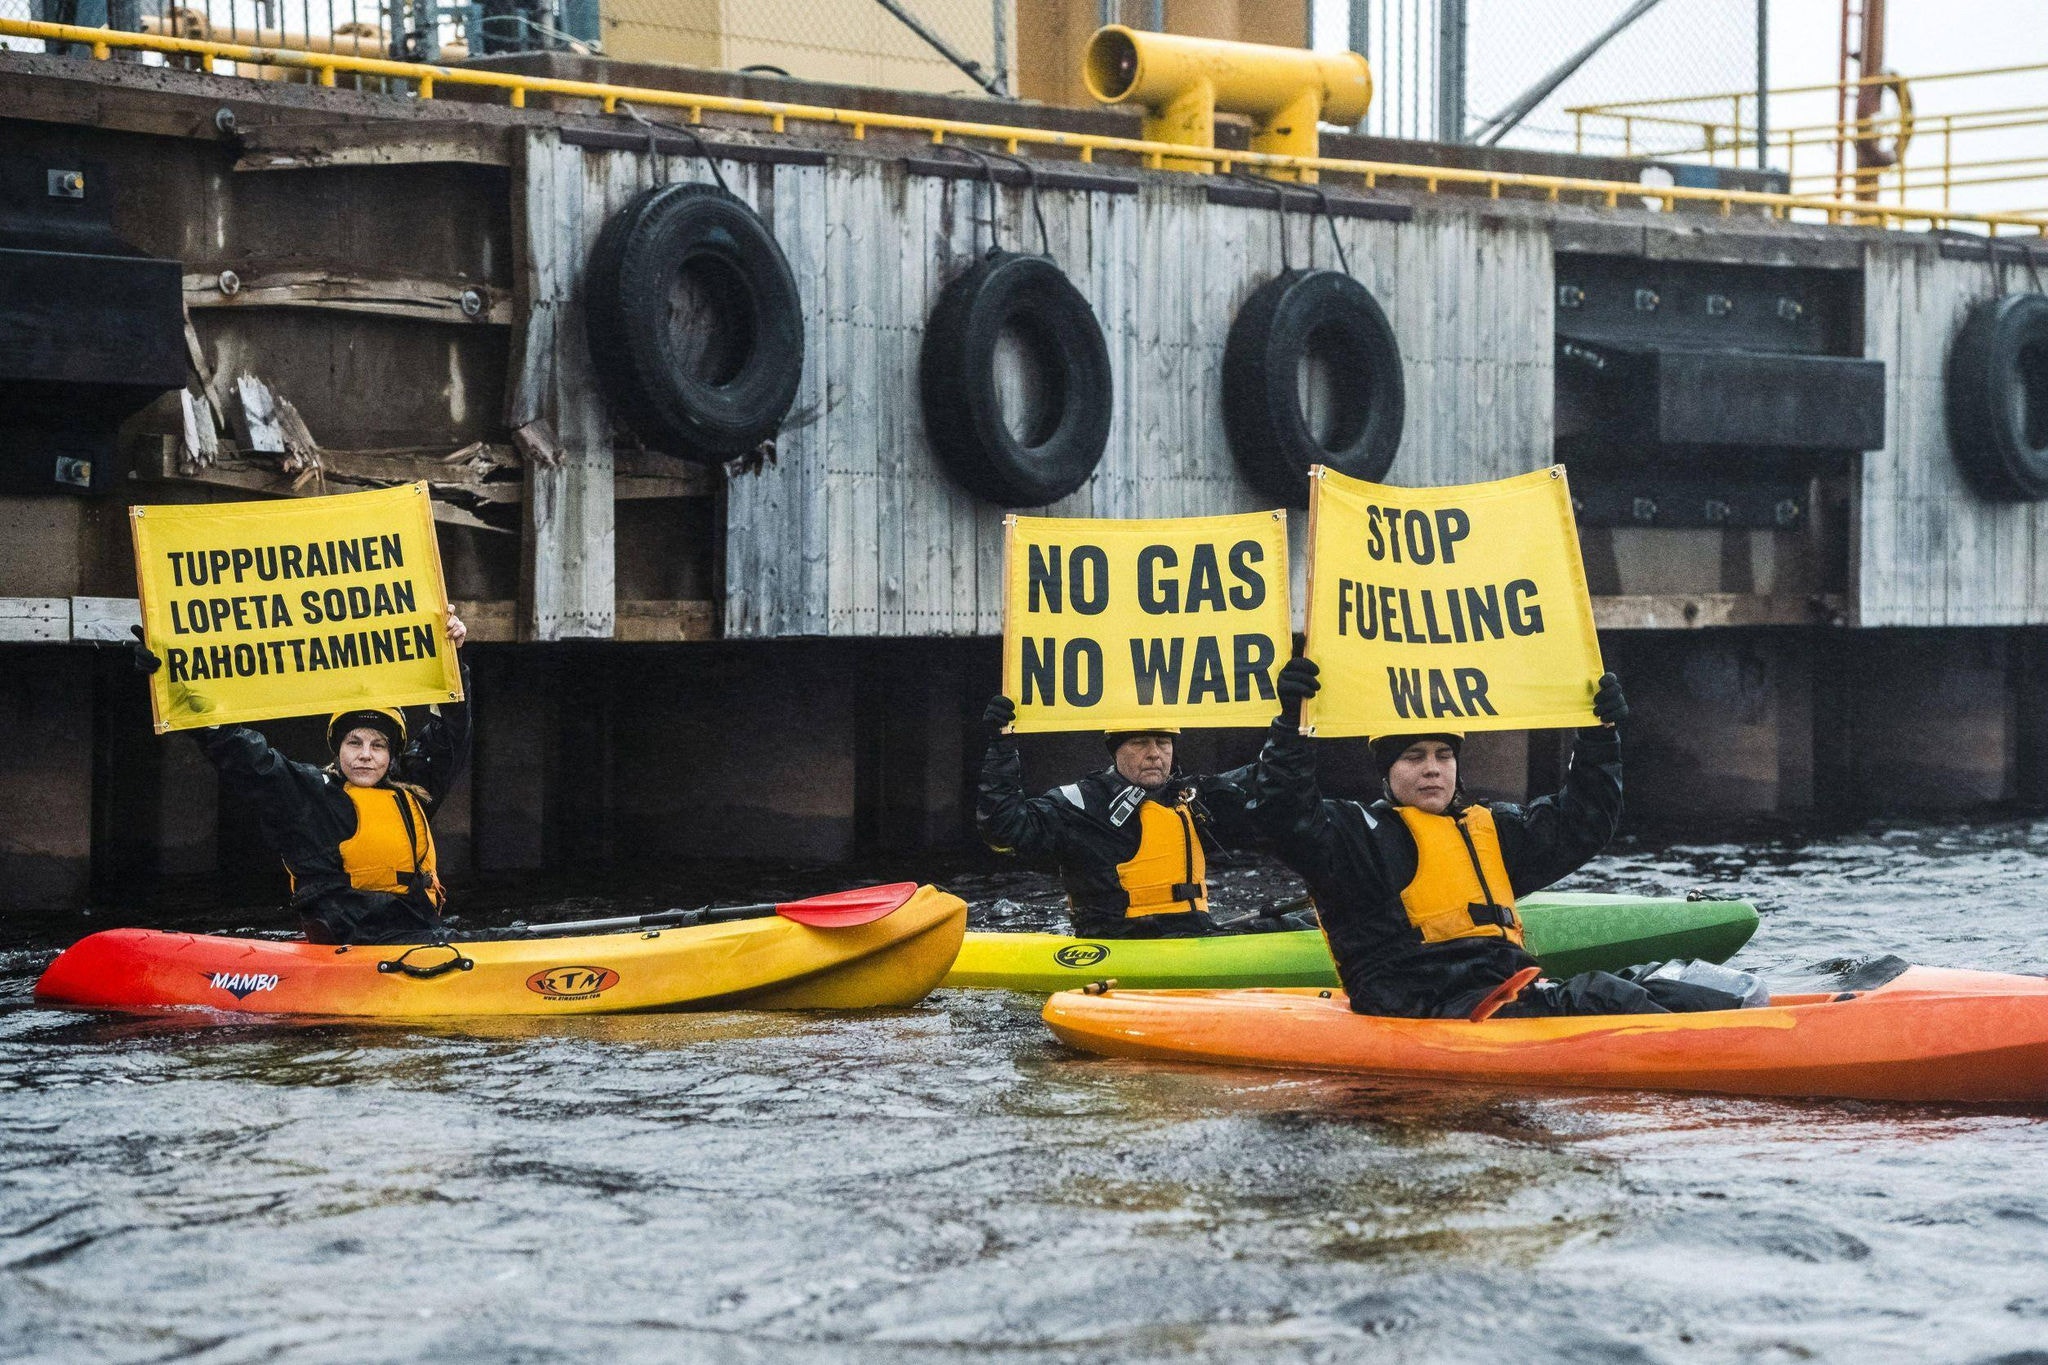 Ativistas do Greenpeace, em pequenos barcos, exibem faixas com dizeres "Stop Fueling War" e "No Gas No War" enquanto bloqueiam um carregamento de gás fóssil russo